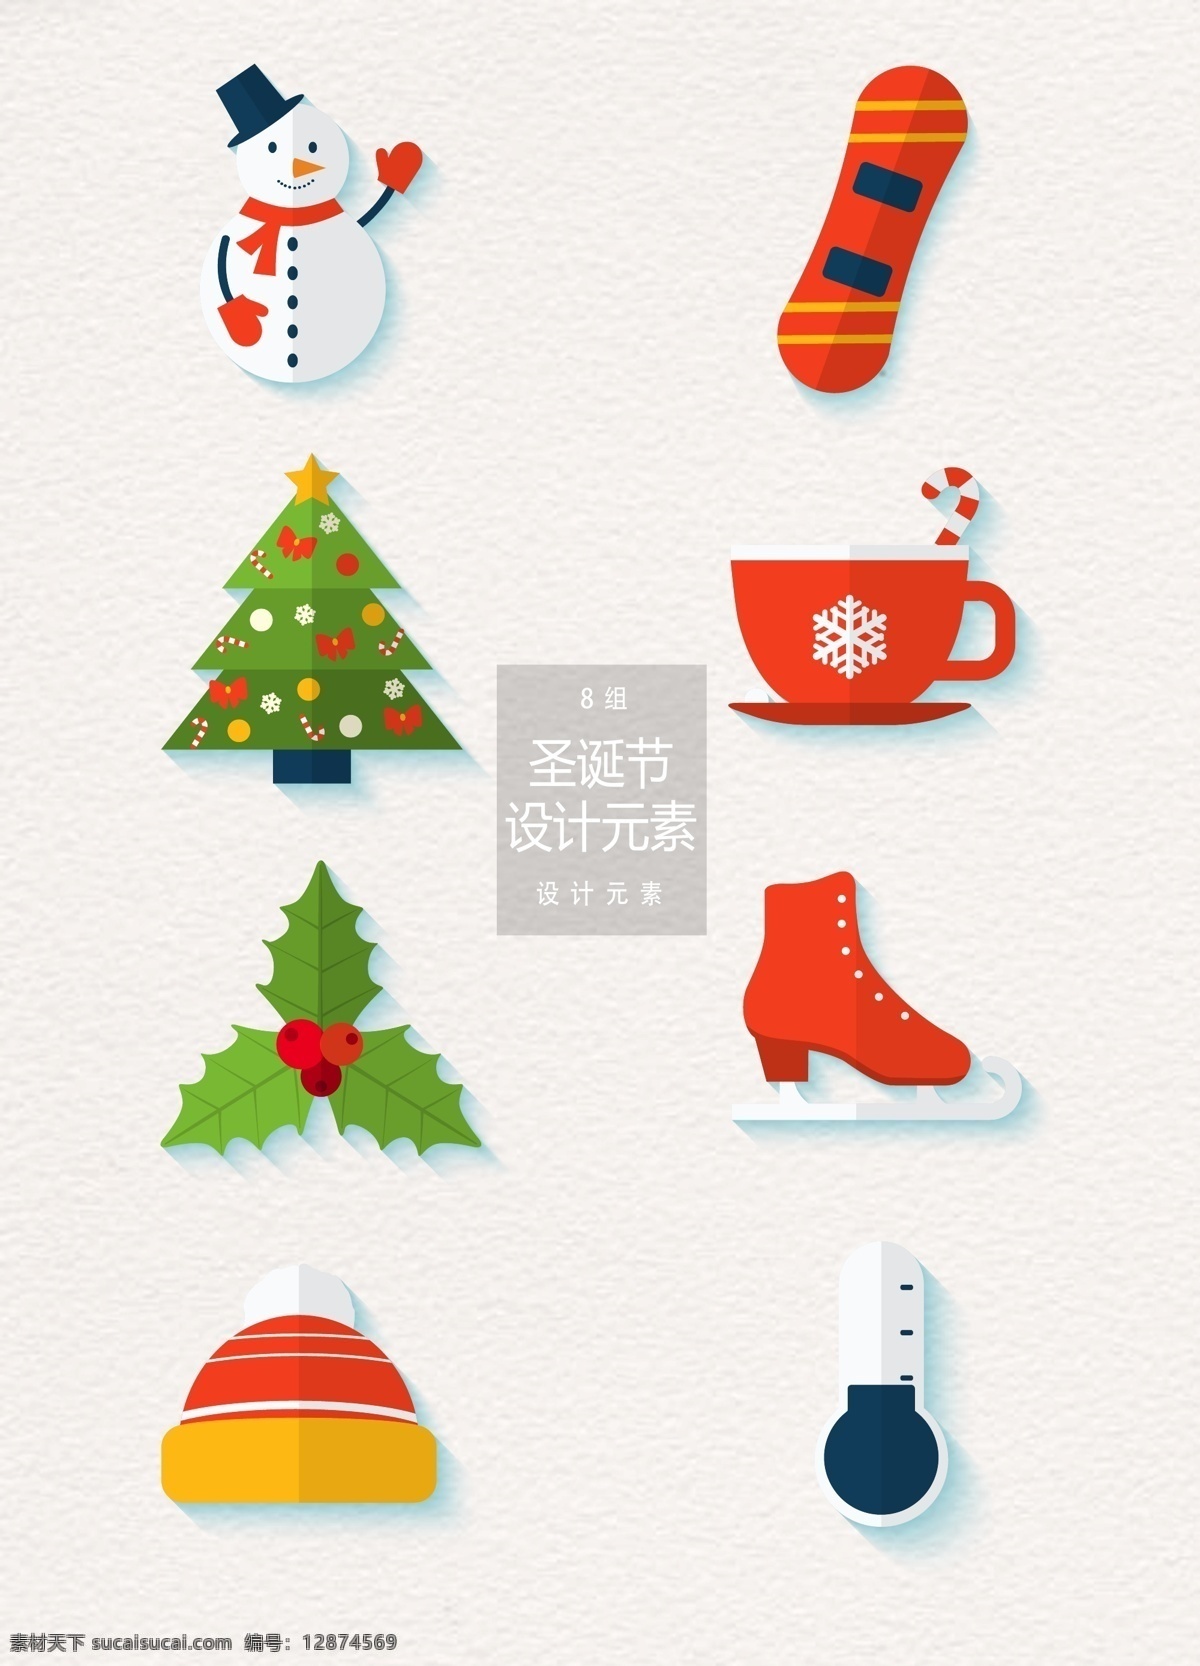 圣诞节 矢量 扁平 元素 圣诞树 杯子 茶杯 帽子 设计元素 圣诞 圣诞装饰 雪人 溜冰鞋 温度计